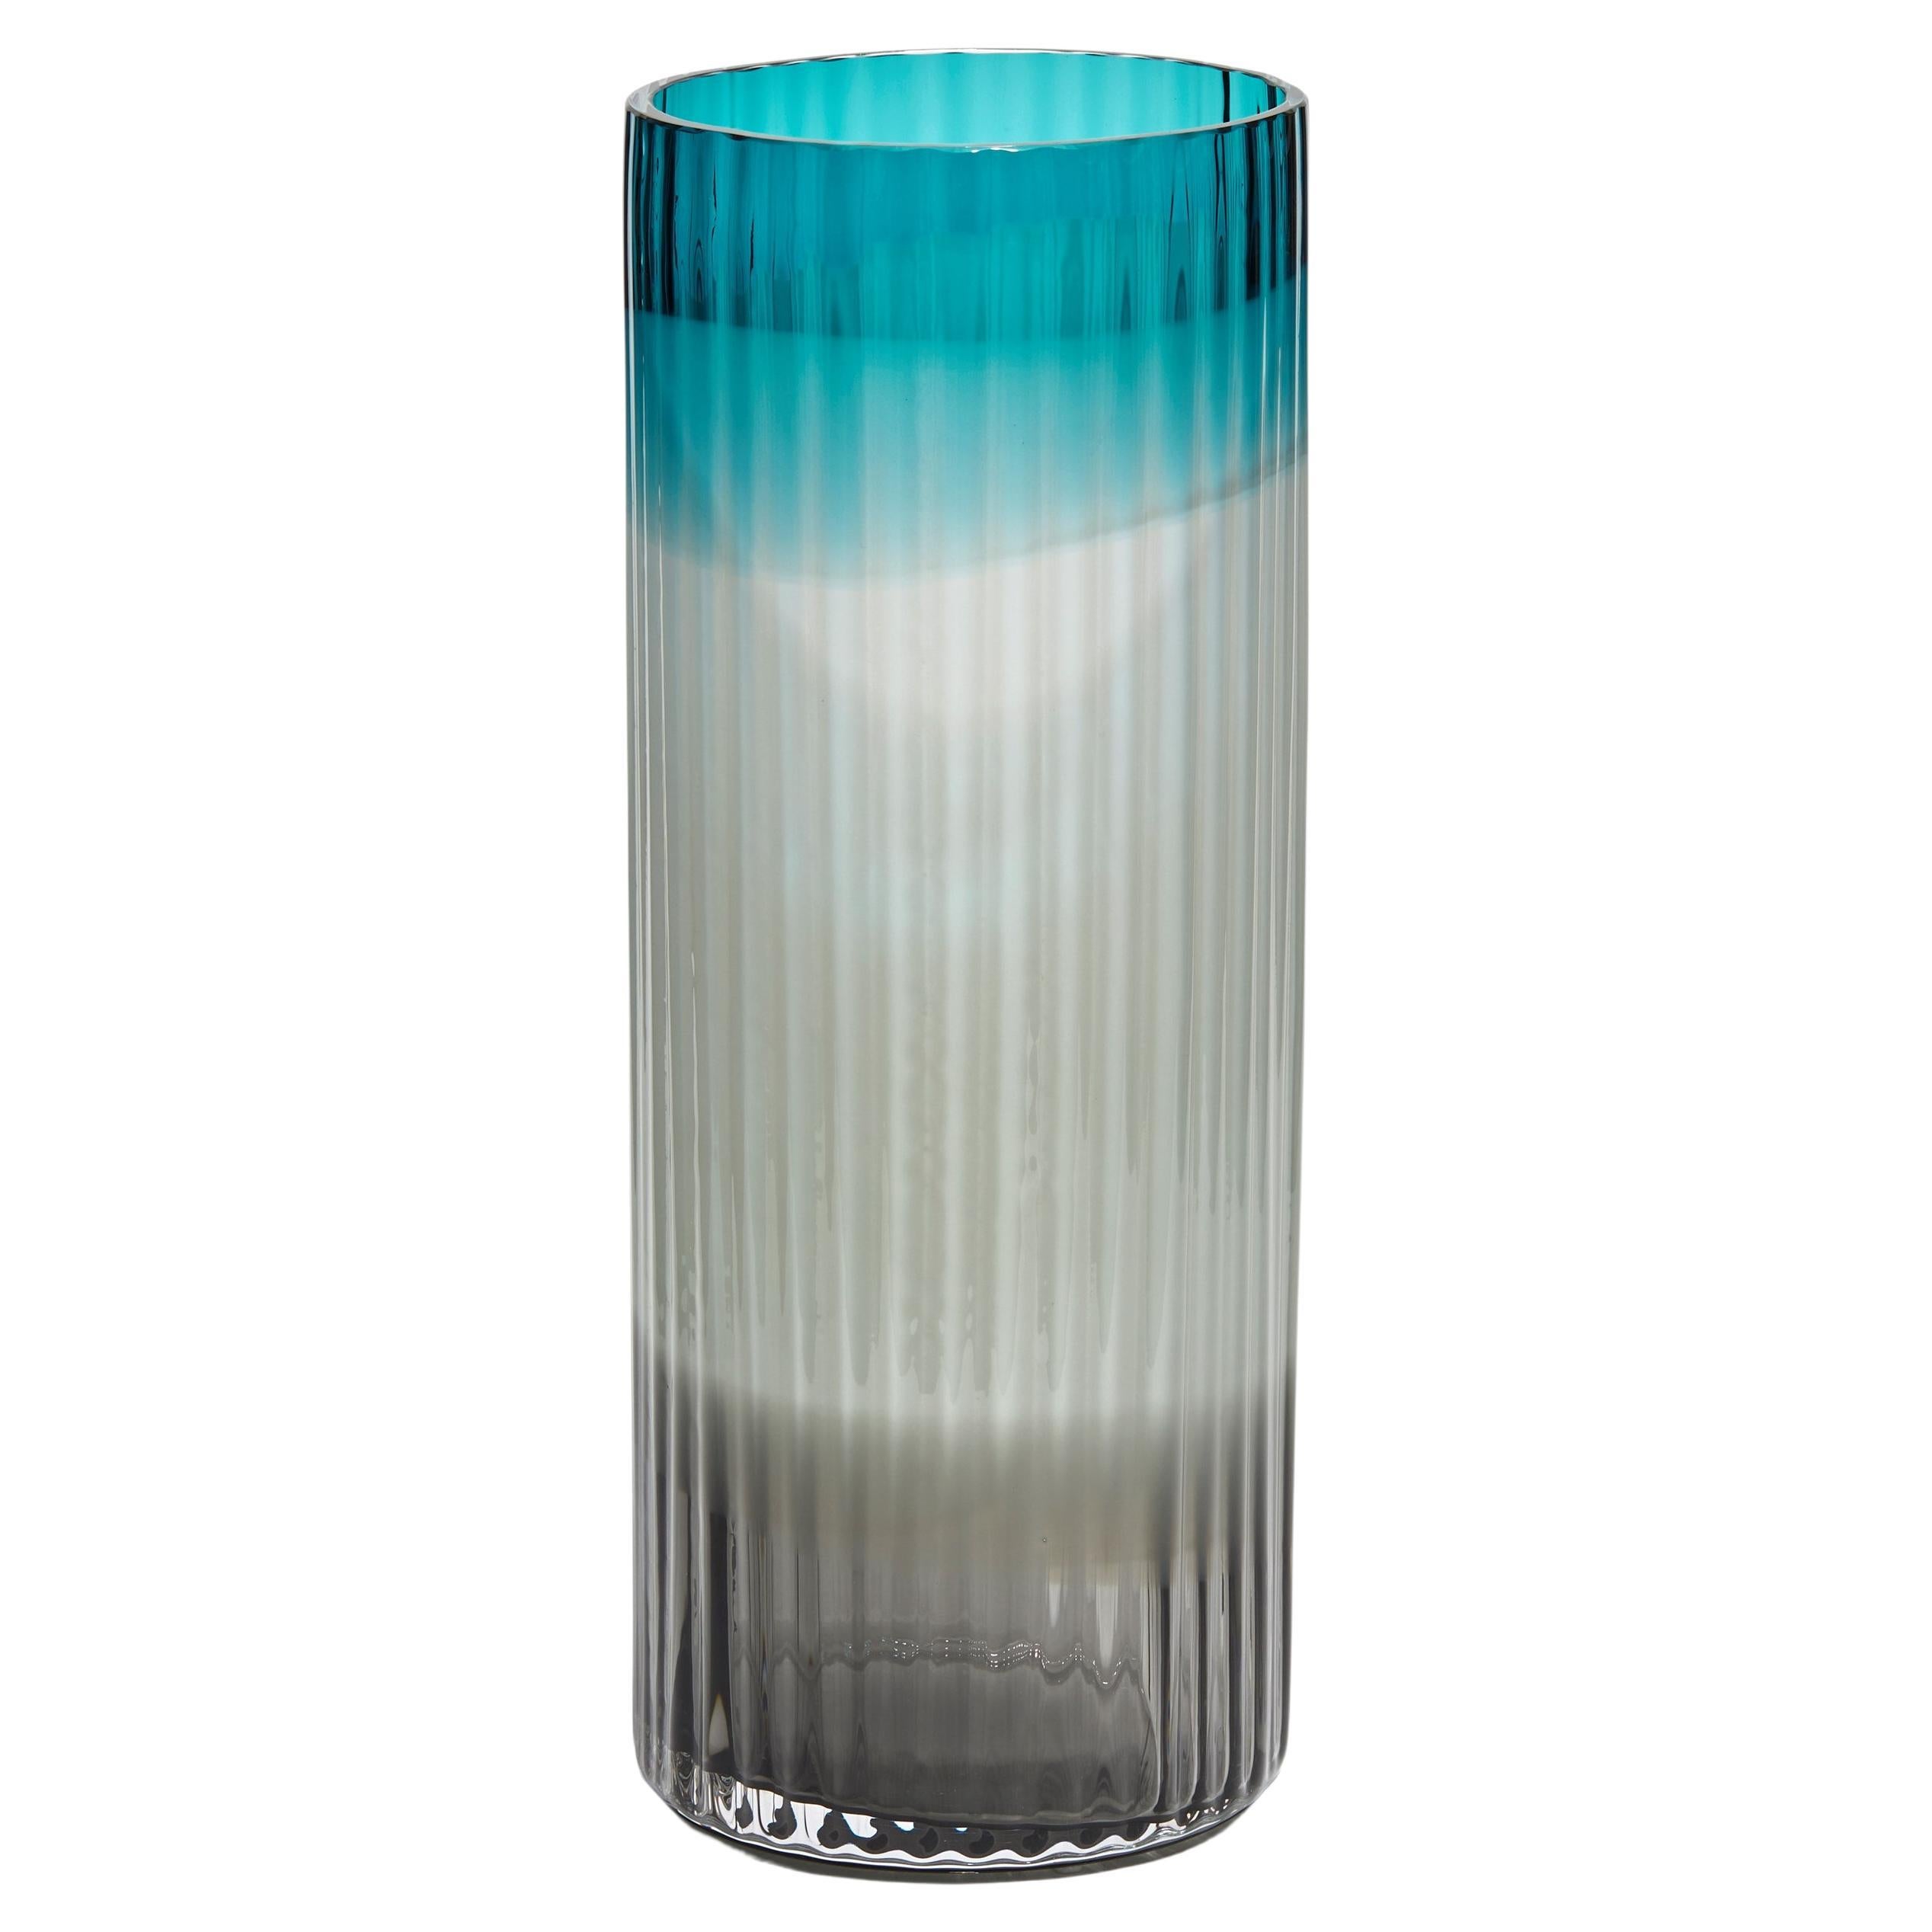 Plissé Vase in Turquoise, Light Blue & Black, a Glass Vase by Lena Bergström For Sale